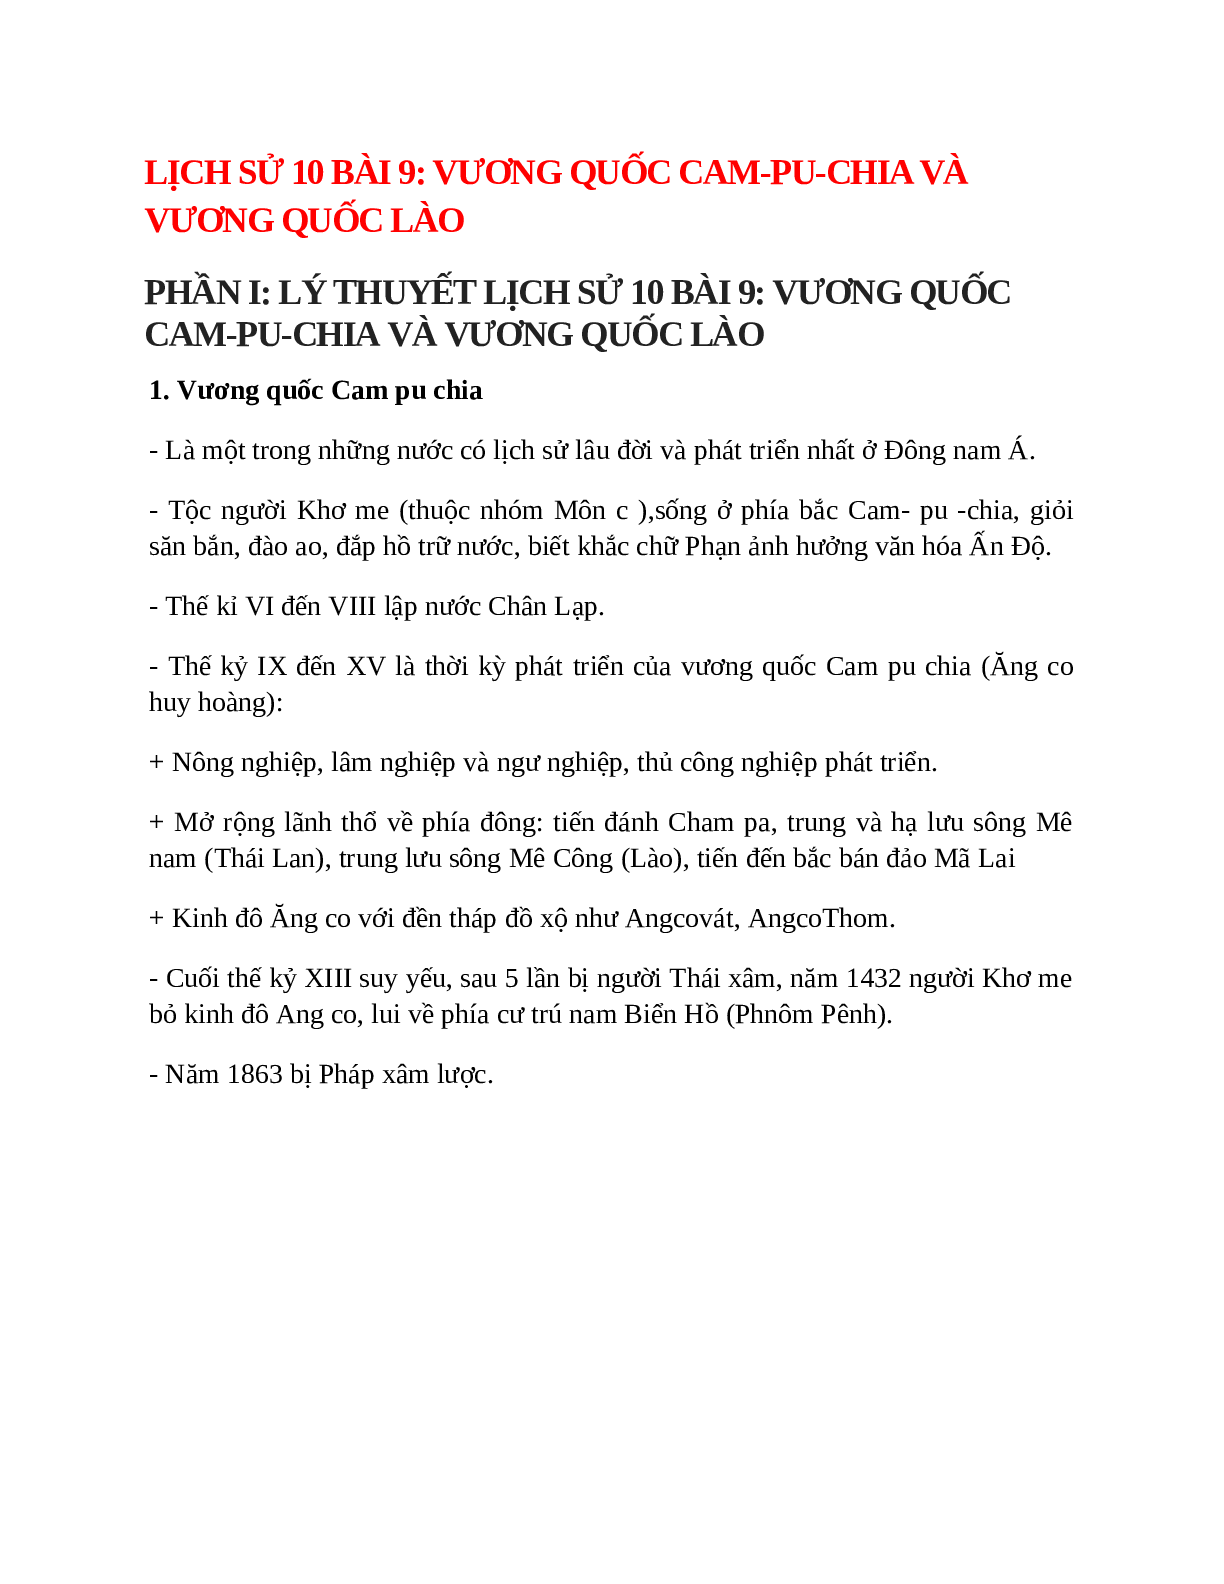 Lịch Sử 10 Bài 9 (Lý thuyết và trắc nghiệm): Vương quốc Cam-pu-chia và Vương quốc Lào (trang 1)